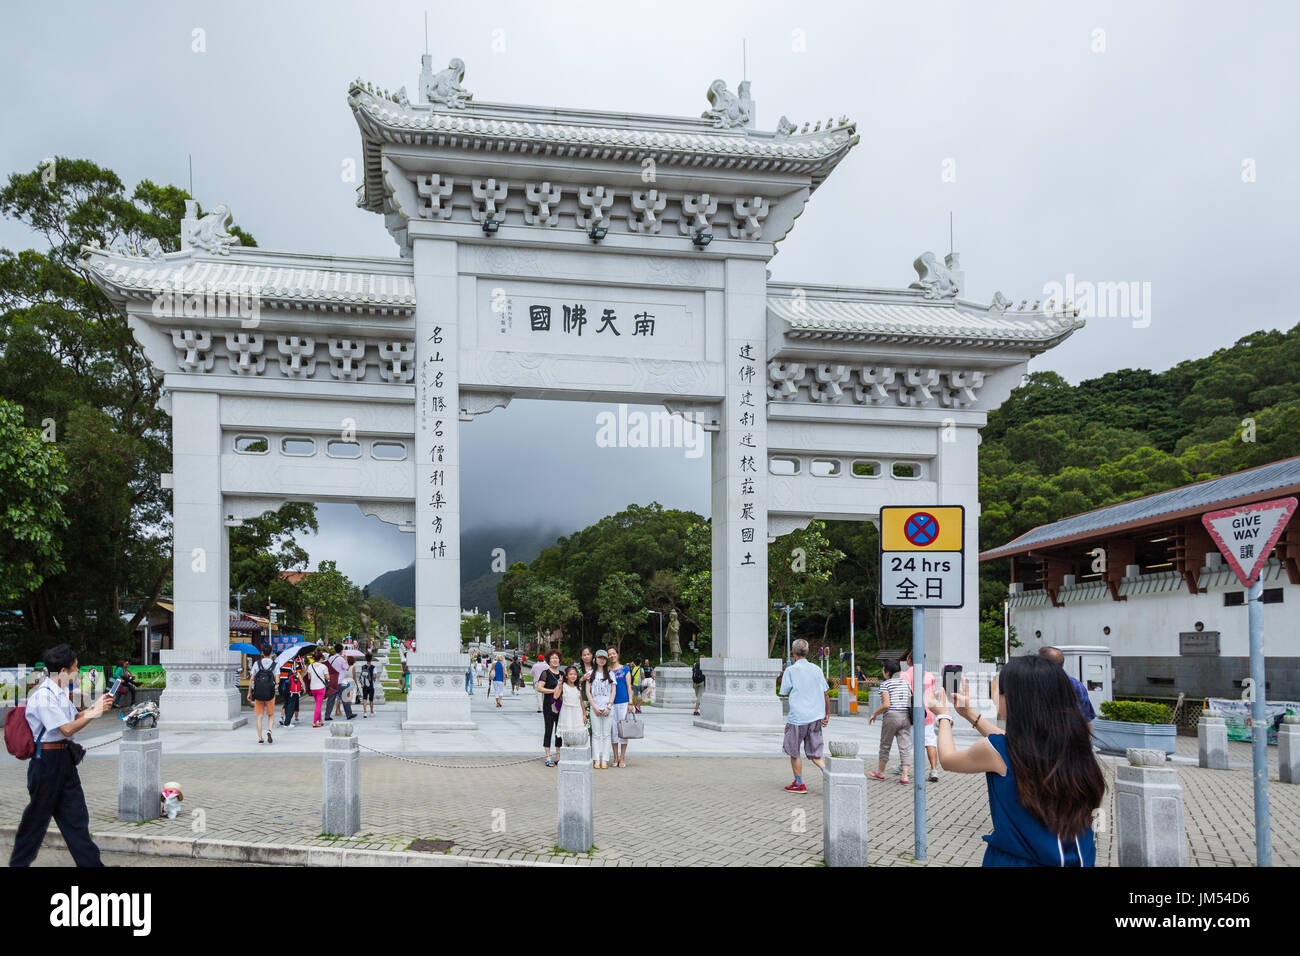 HONG KONG - JULY 19, 2014: gate between Po Lin Monastery and The Big Buddha, Hongkong Stock Photo